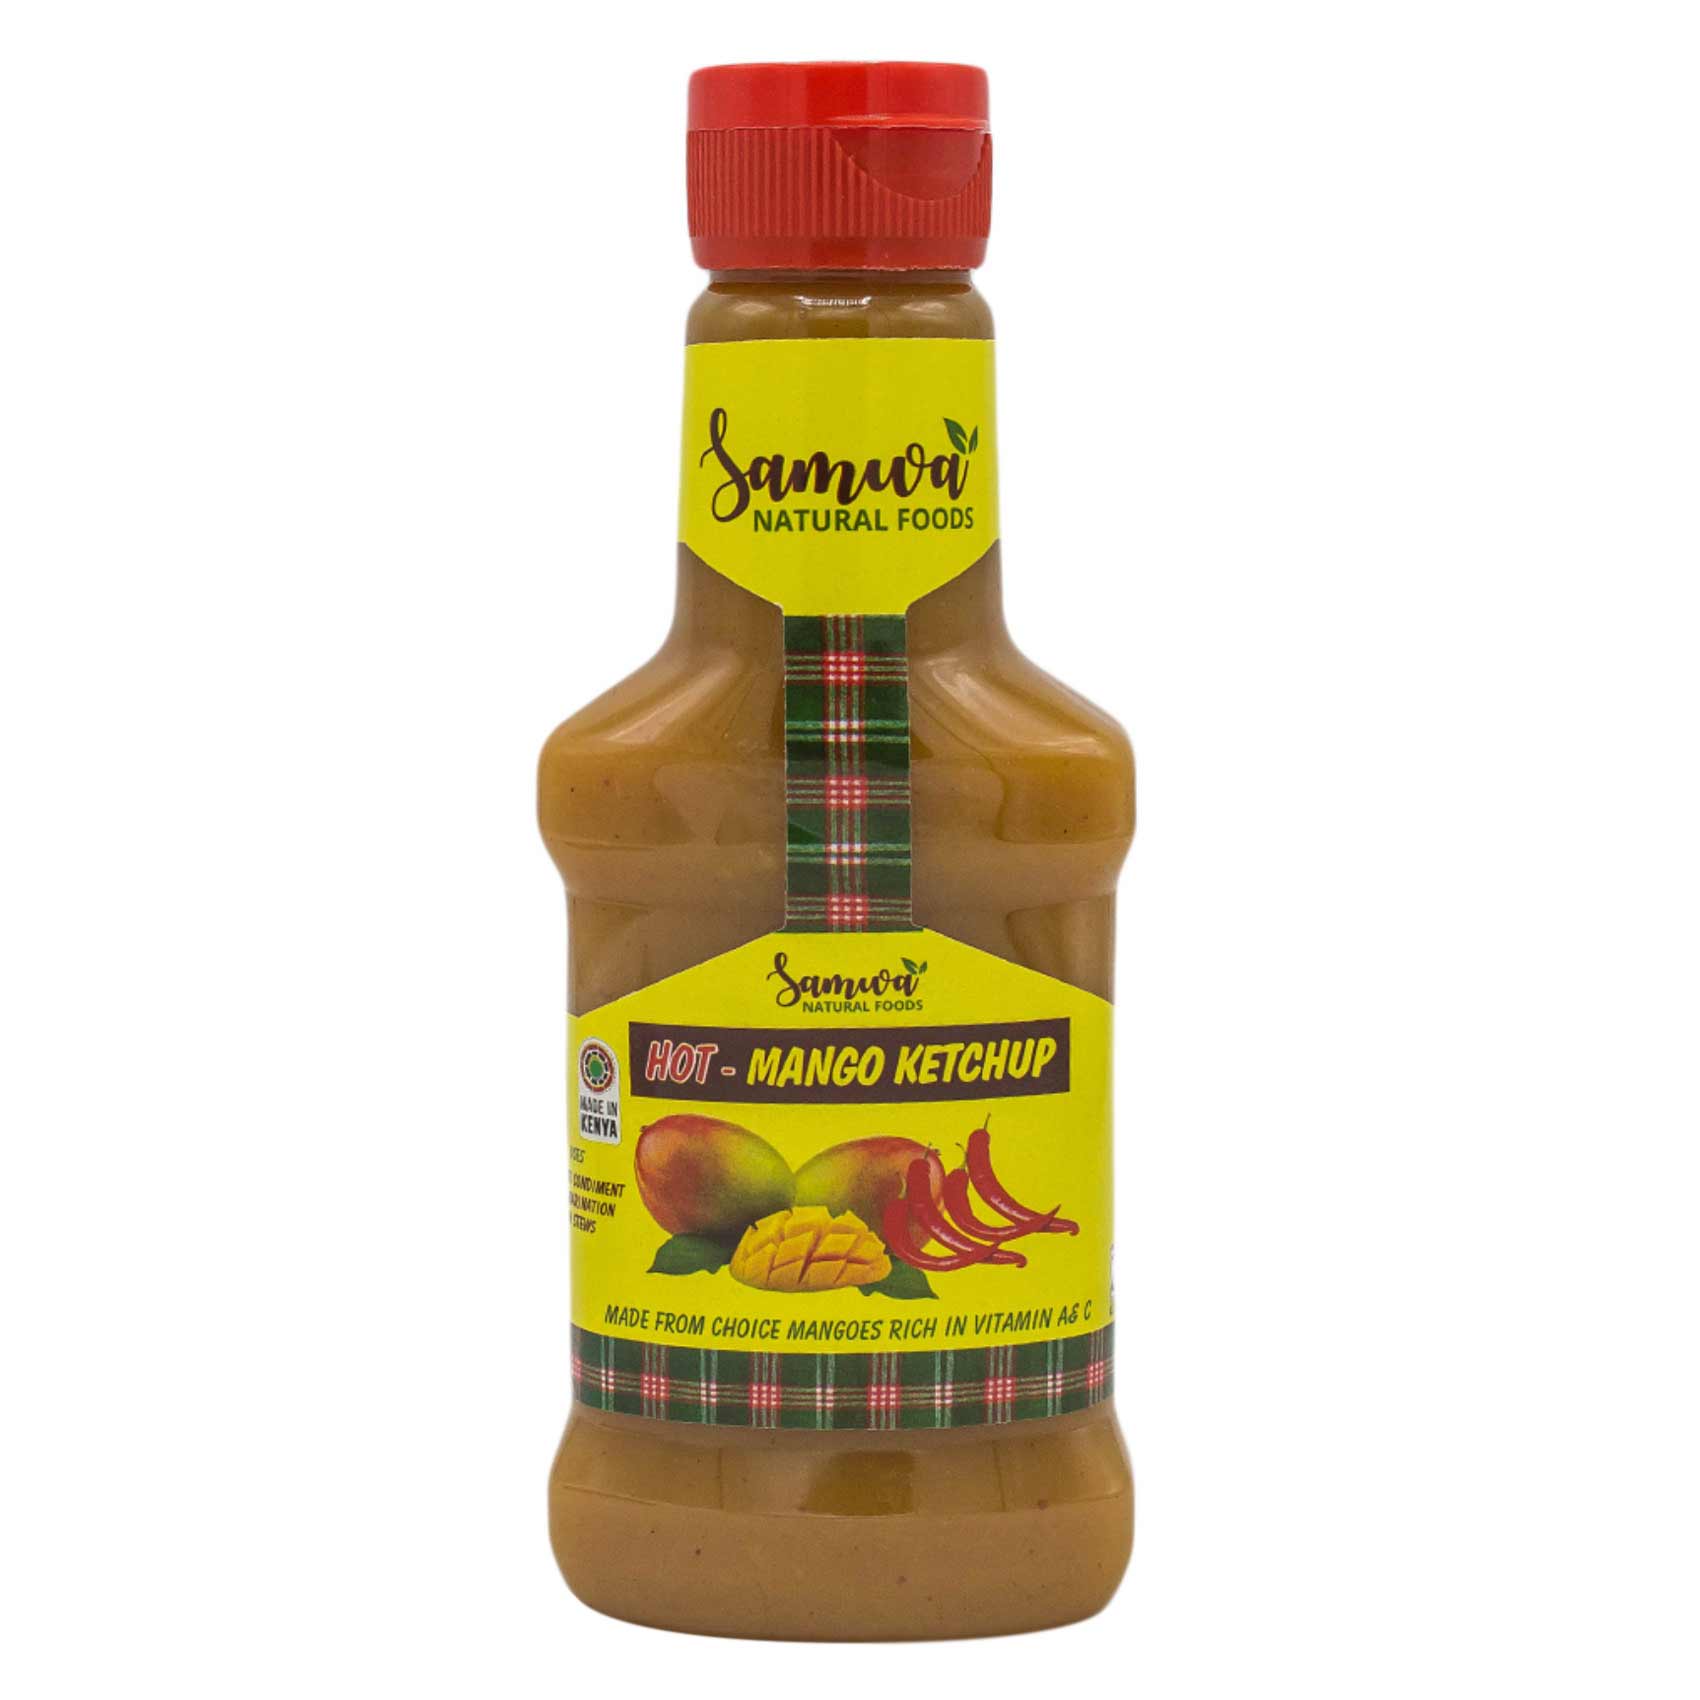 Samwa Hot Mango Ketchup 400g